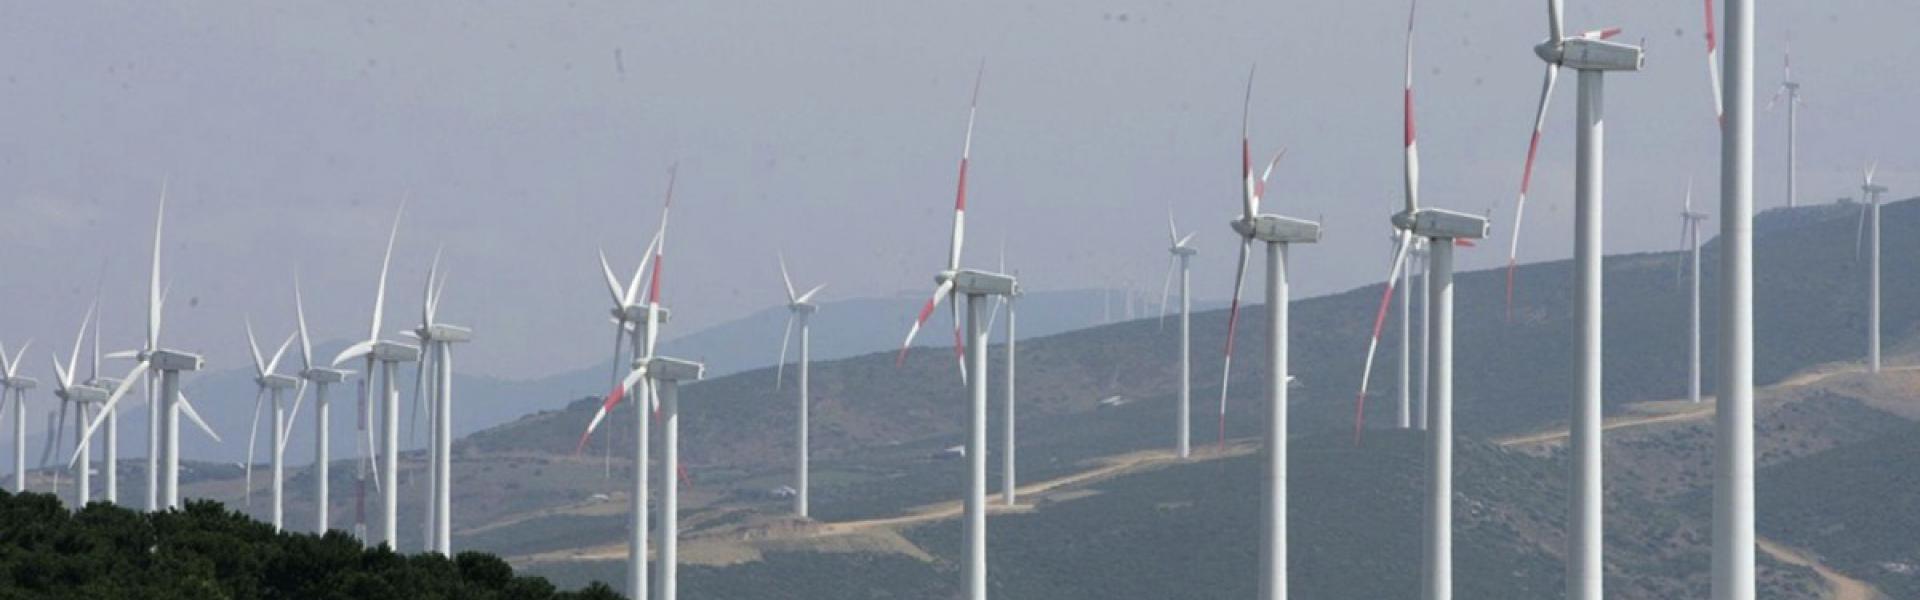 المغرب يمضي بثبات على طريق تحقيق الاكتفاء الذاتي في الطاقة